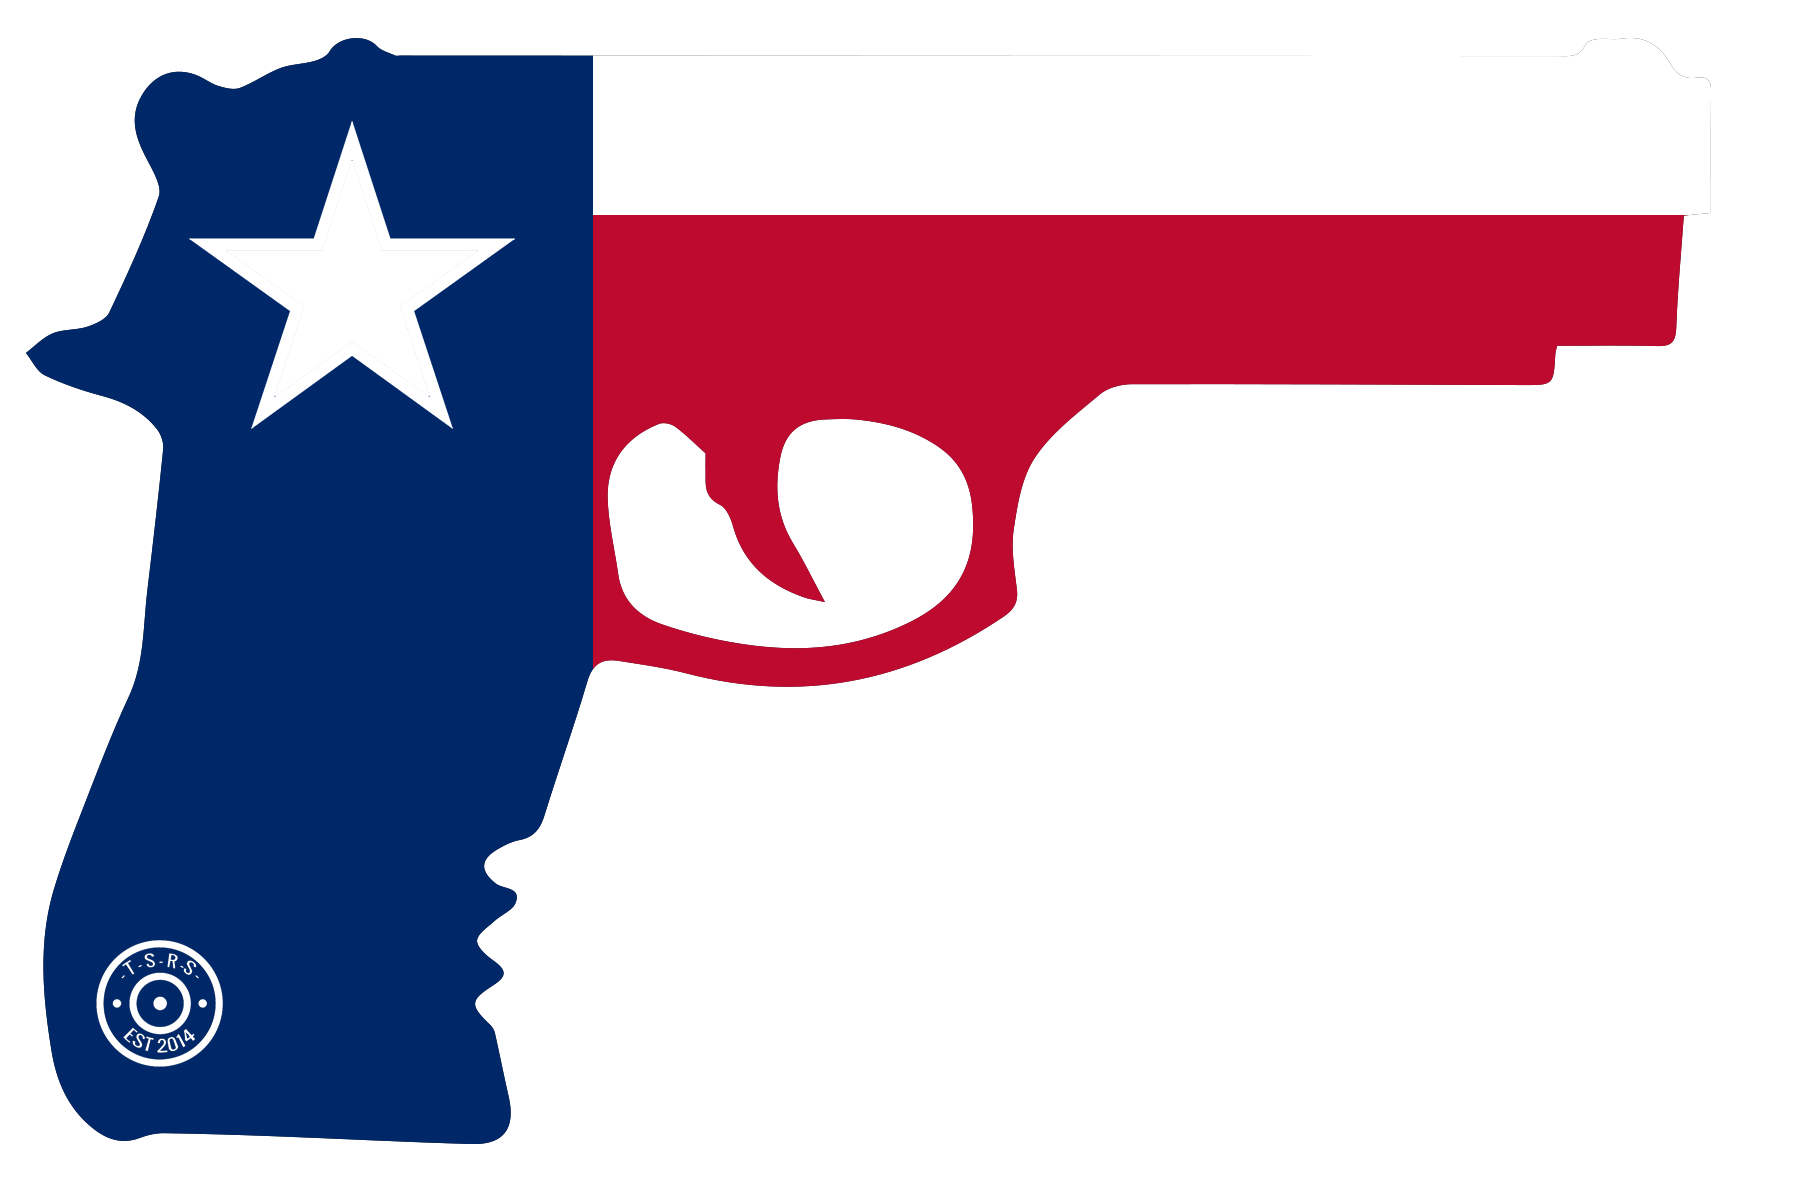 clipart gun amendment